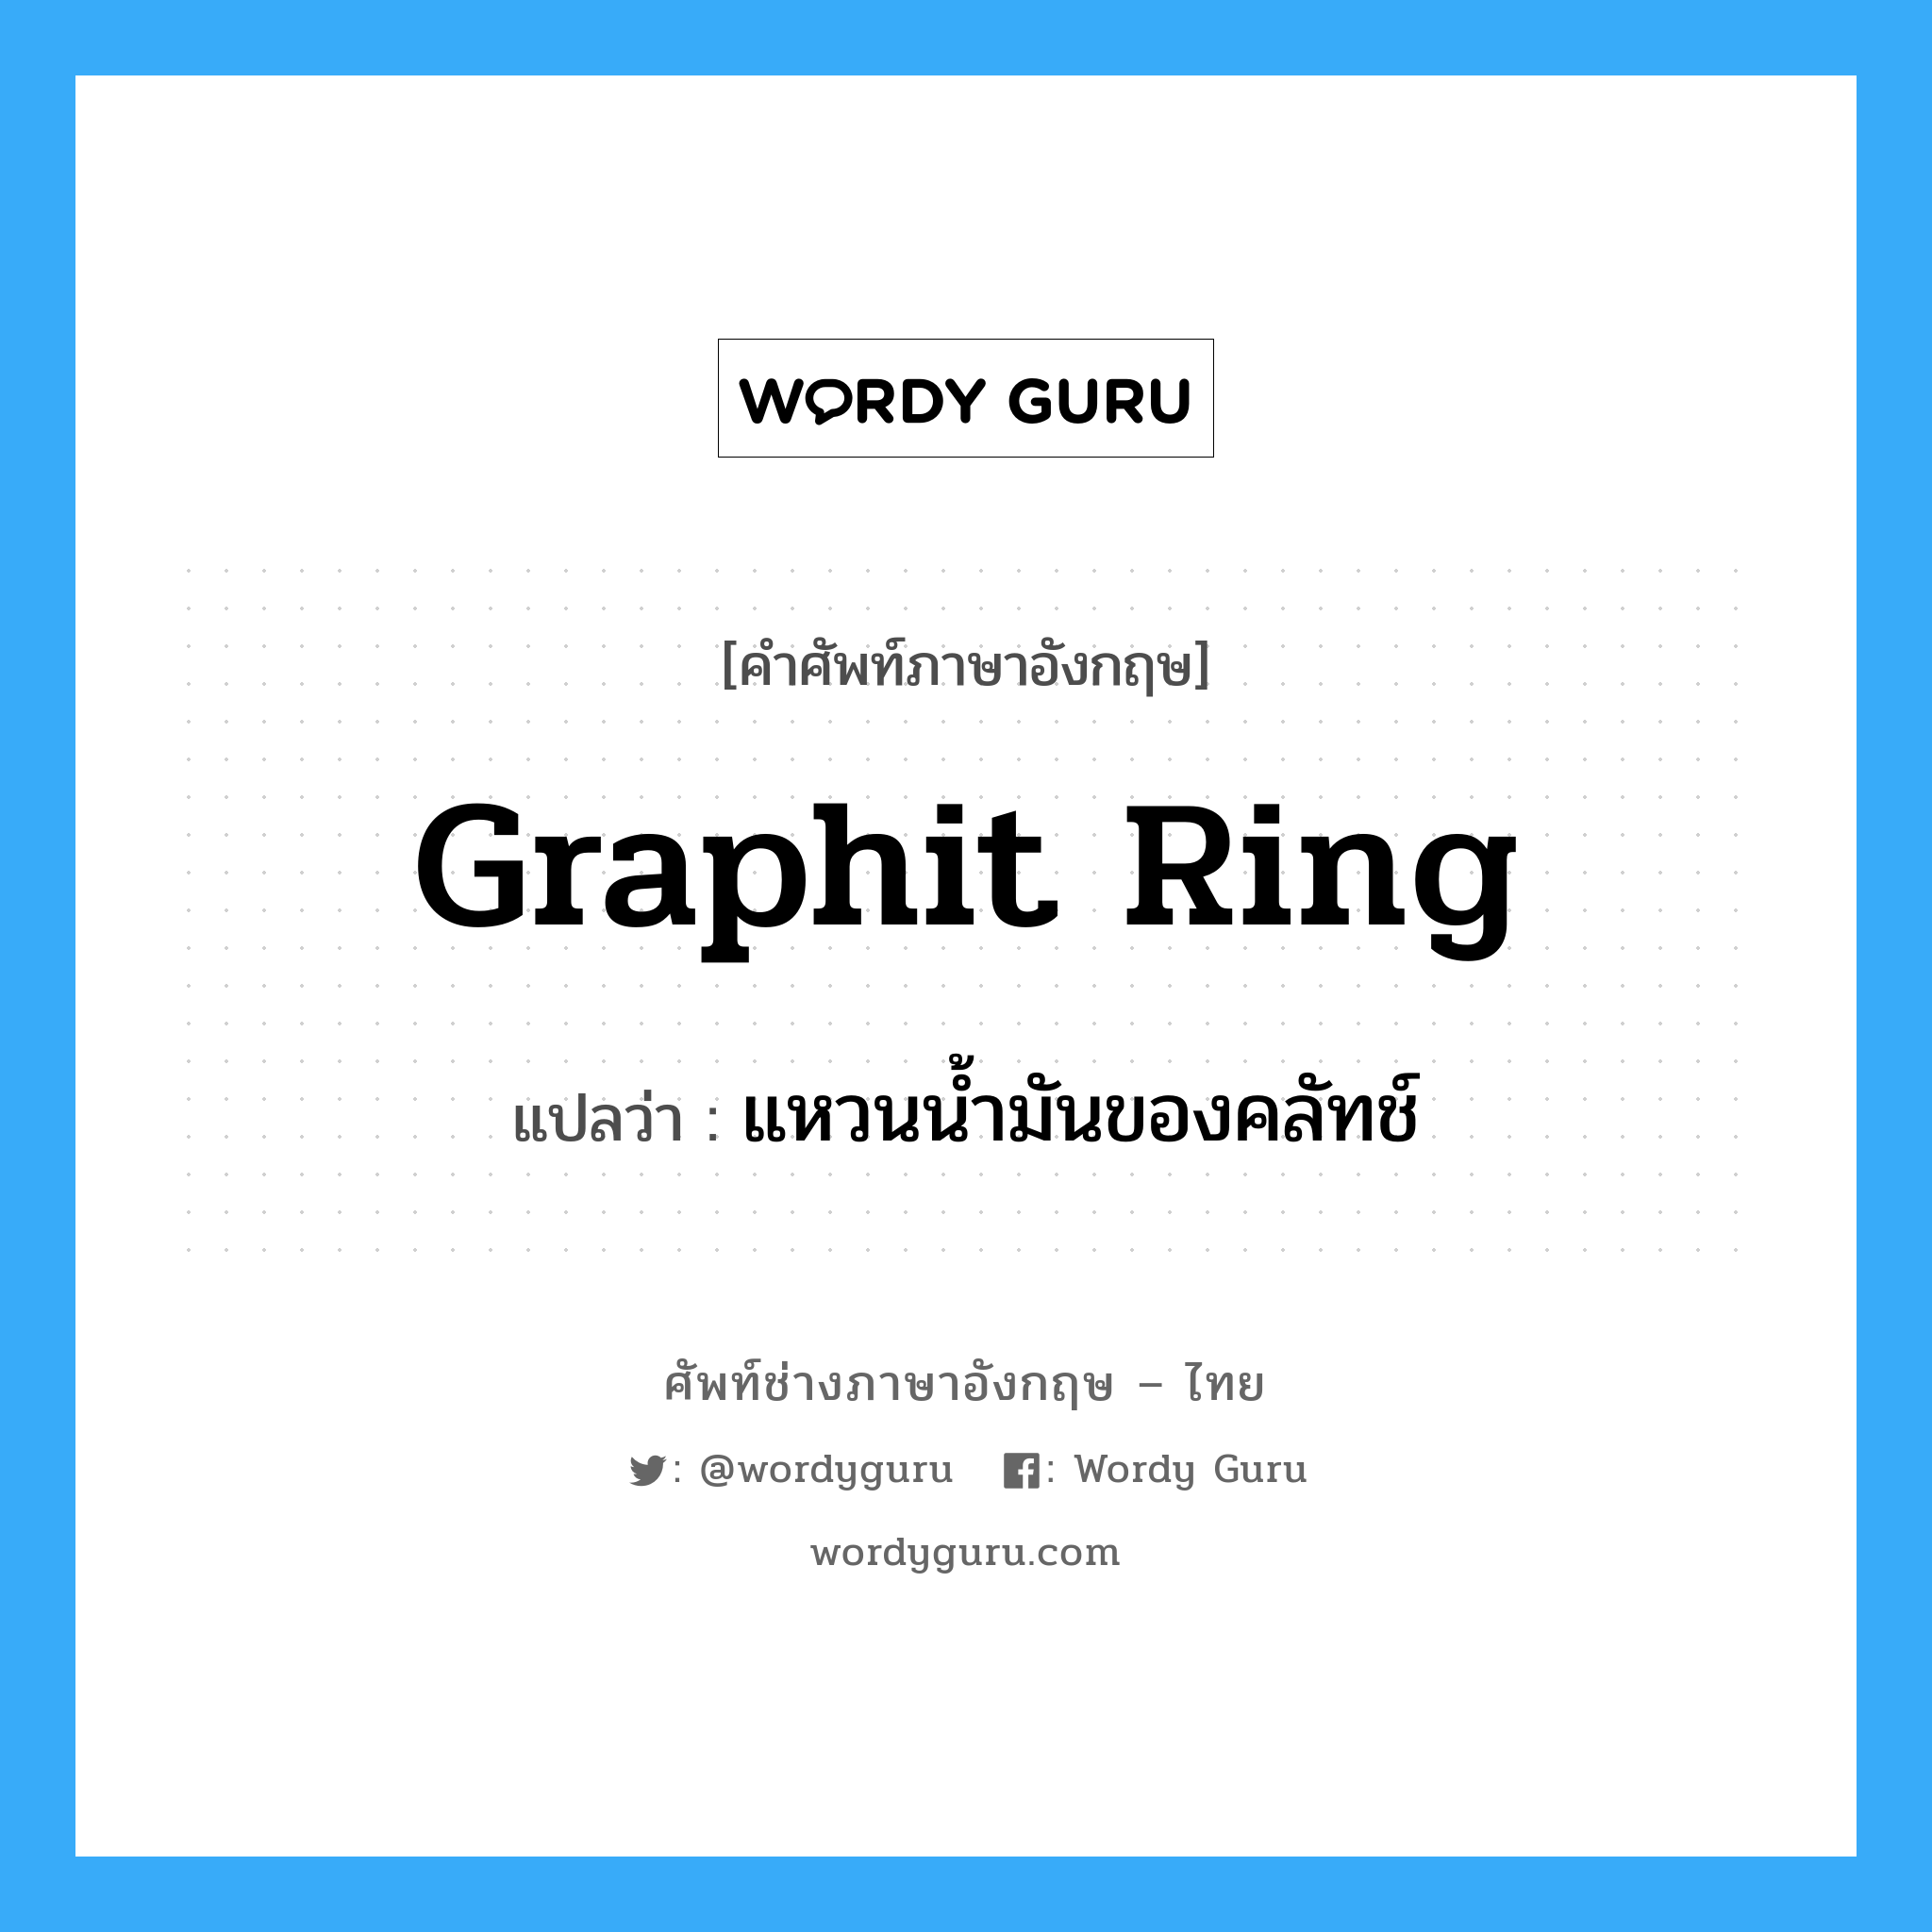 แหวนน้ำมันของคลัทช์ ภาษาอังกฤษ?, คำศัพท์ช่างภาษาอังกฤษ - ไทย แหวนน้ำมันของคลัทช์ คำศัพท์ภาษาอังกฤษ แหวนน้ำมันของคลัทช์ แปลว่า graphit ring